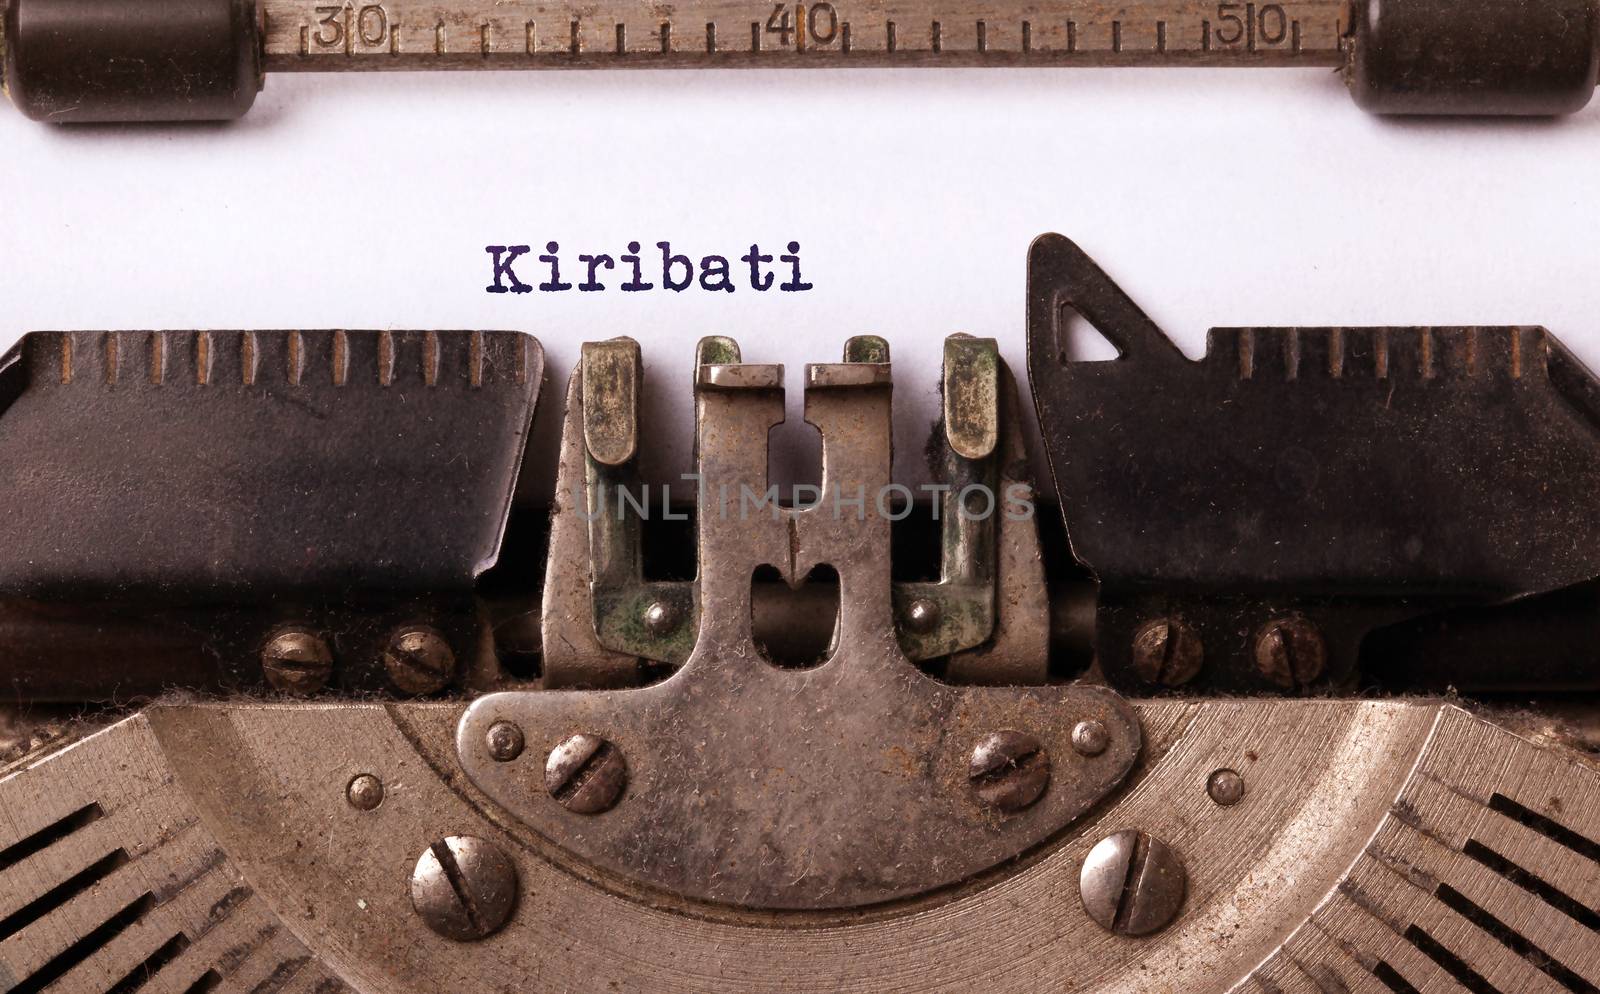 Old typewriter - Kiribati by michaklootwijk